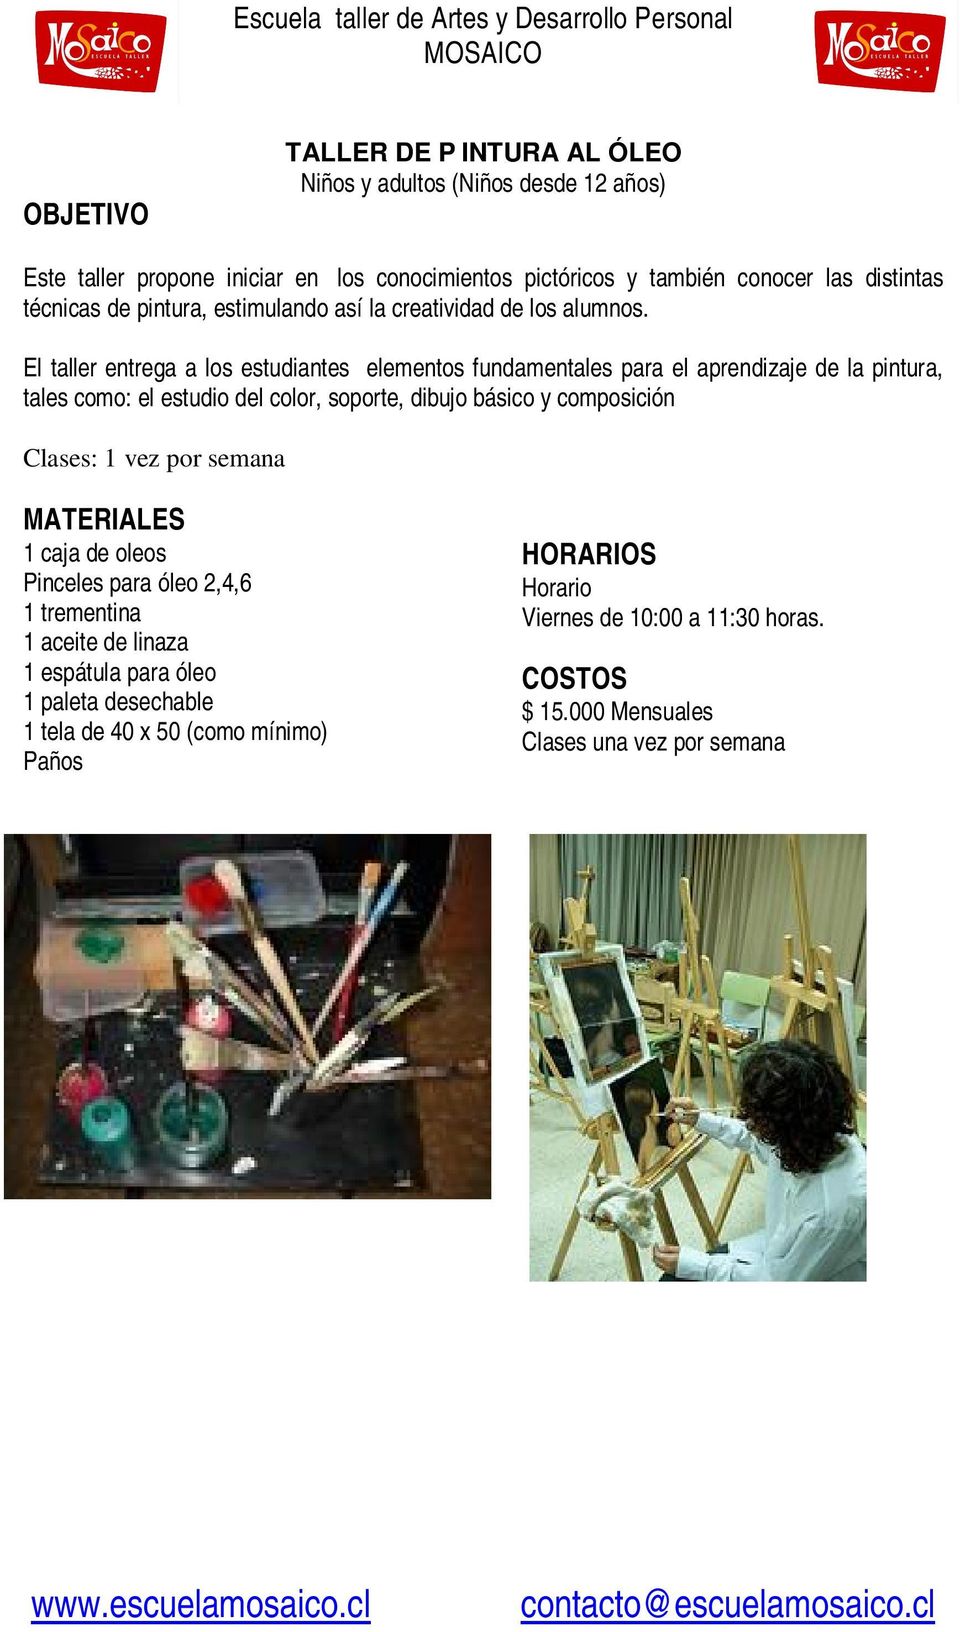 El taller entrega a los estudiantes elementos fundamentales para el aprendizaje de la pintura, tales como: el estudio del color, soporte, dibujo básico y composición